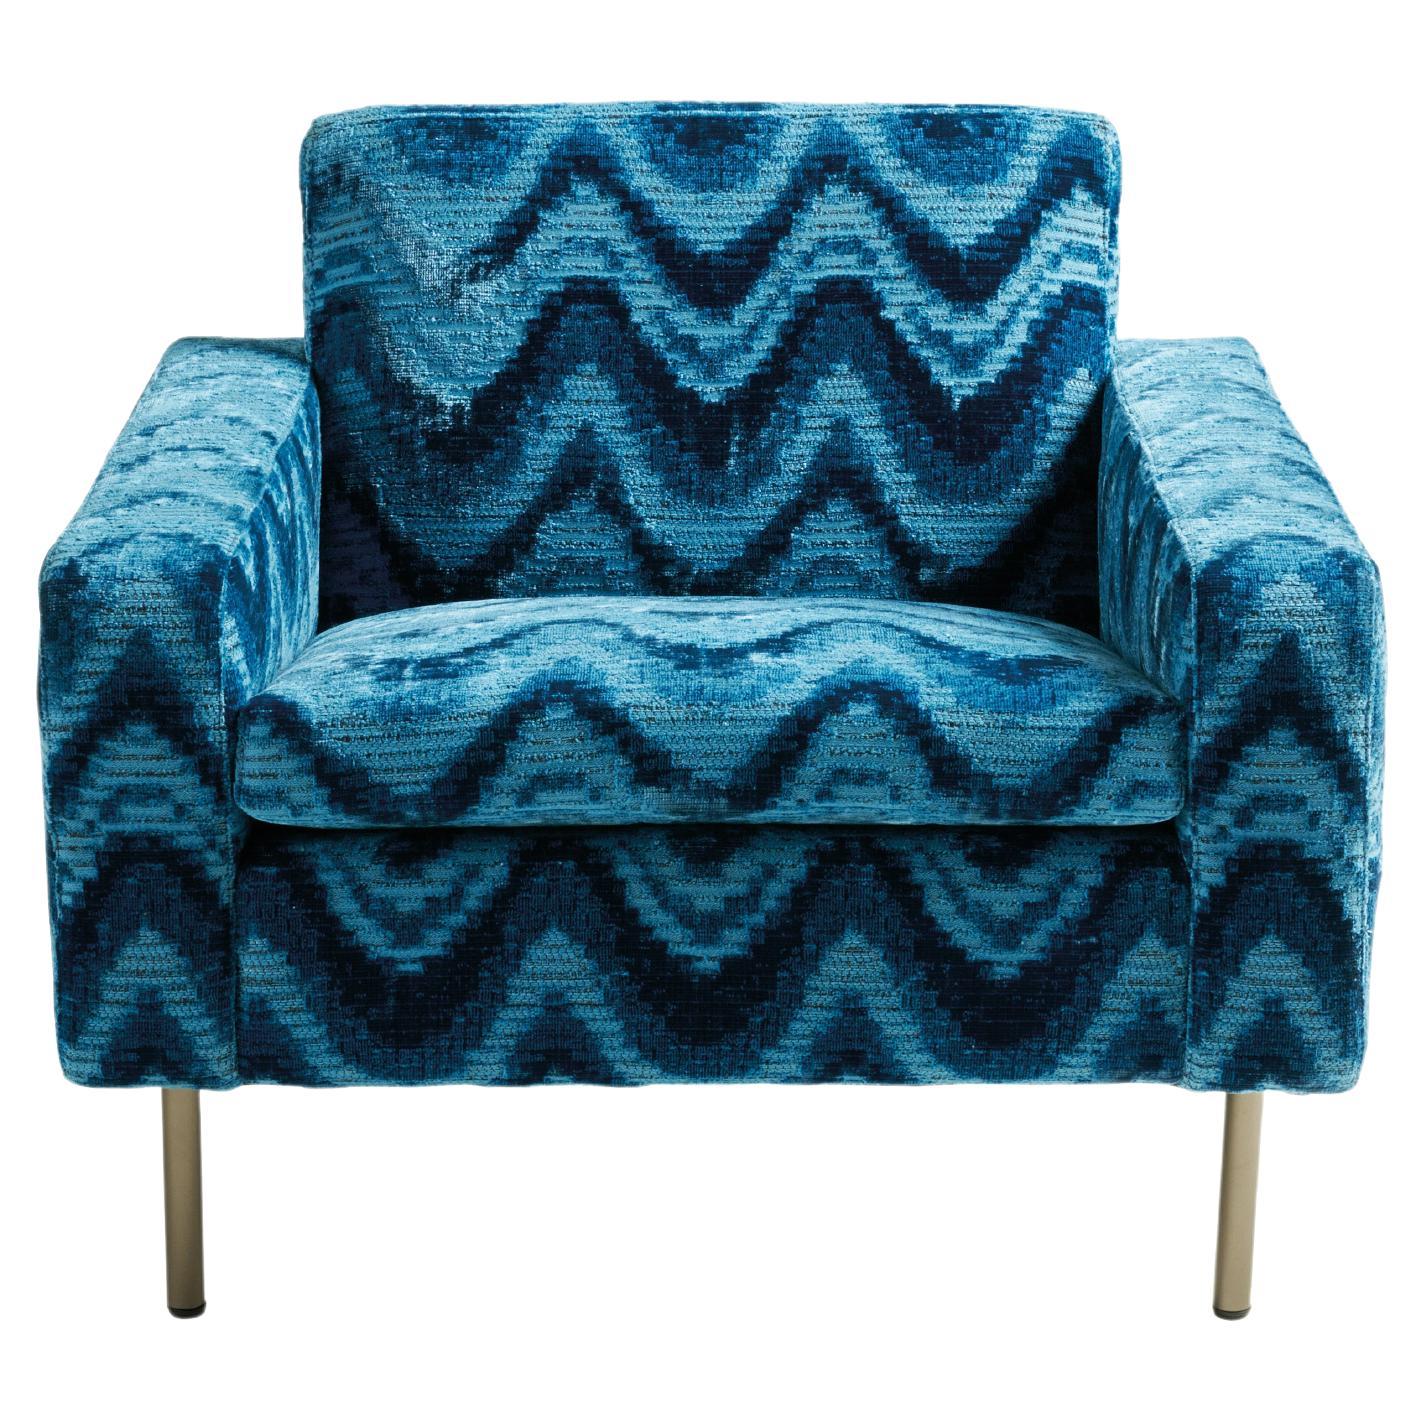 Sessel im Stil des 21. Jahrhunderts aus blauem Jacquard-Stoff von Etro Home Interiors